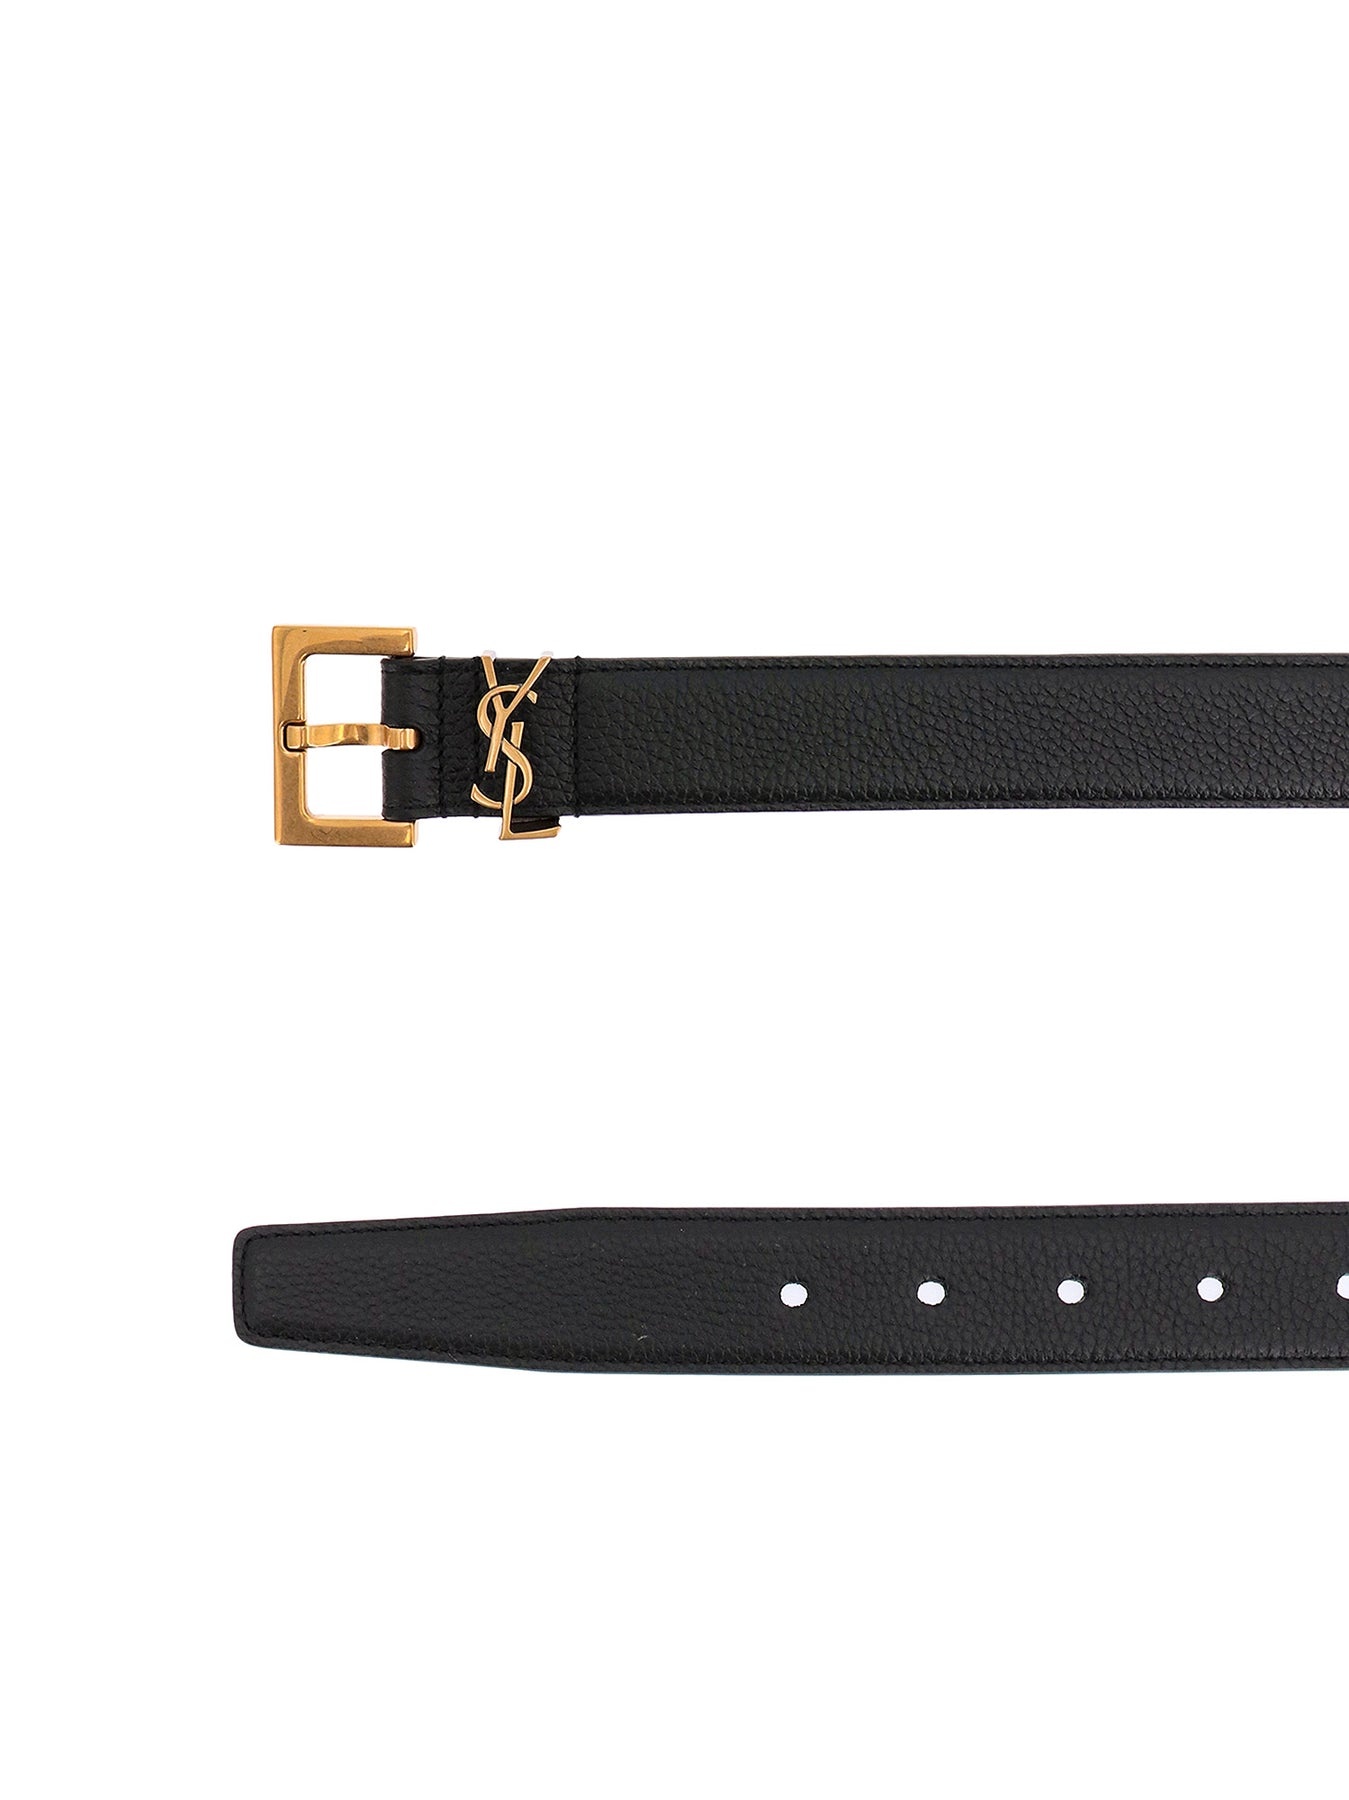 Hammered leather belt - 2